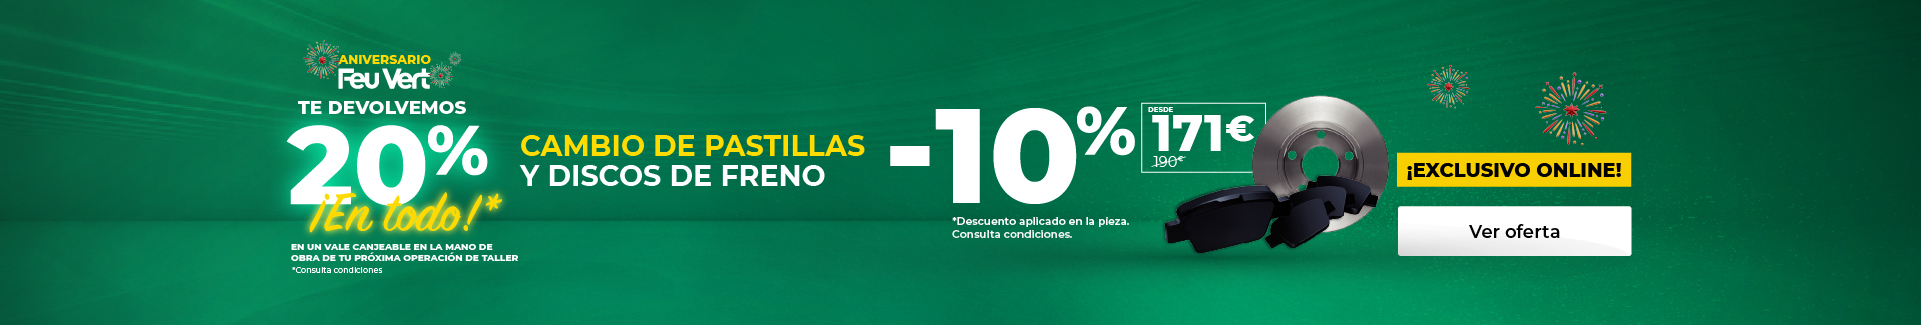 10% DTO EN DISCOS + PASTILLAS. Exclusivo online